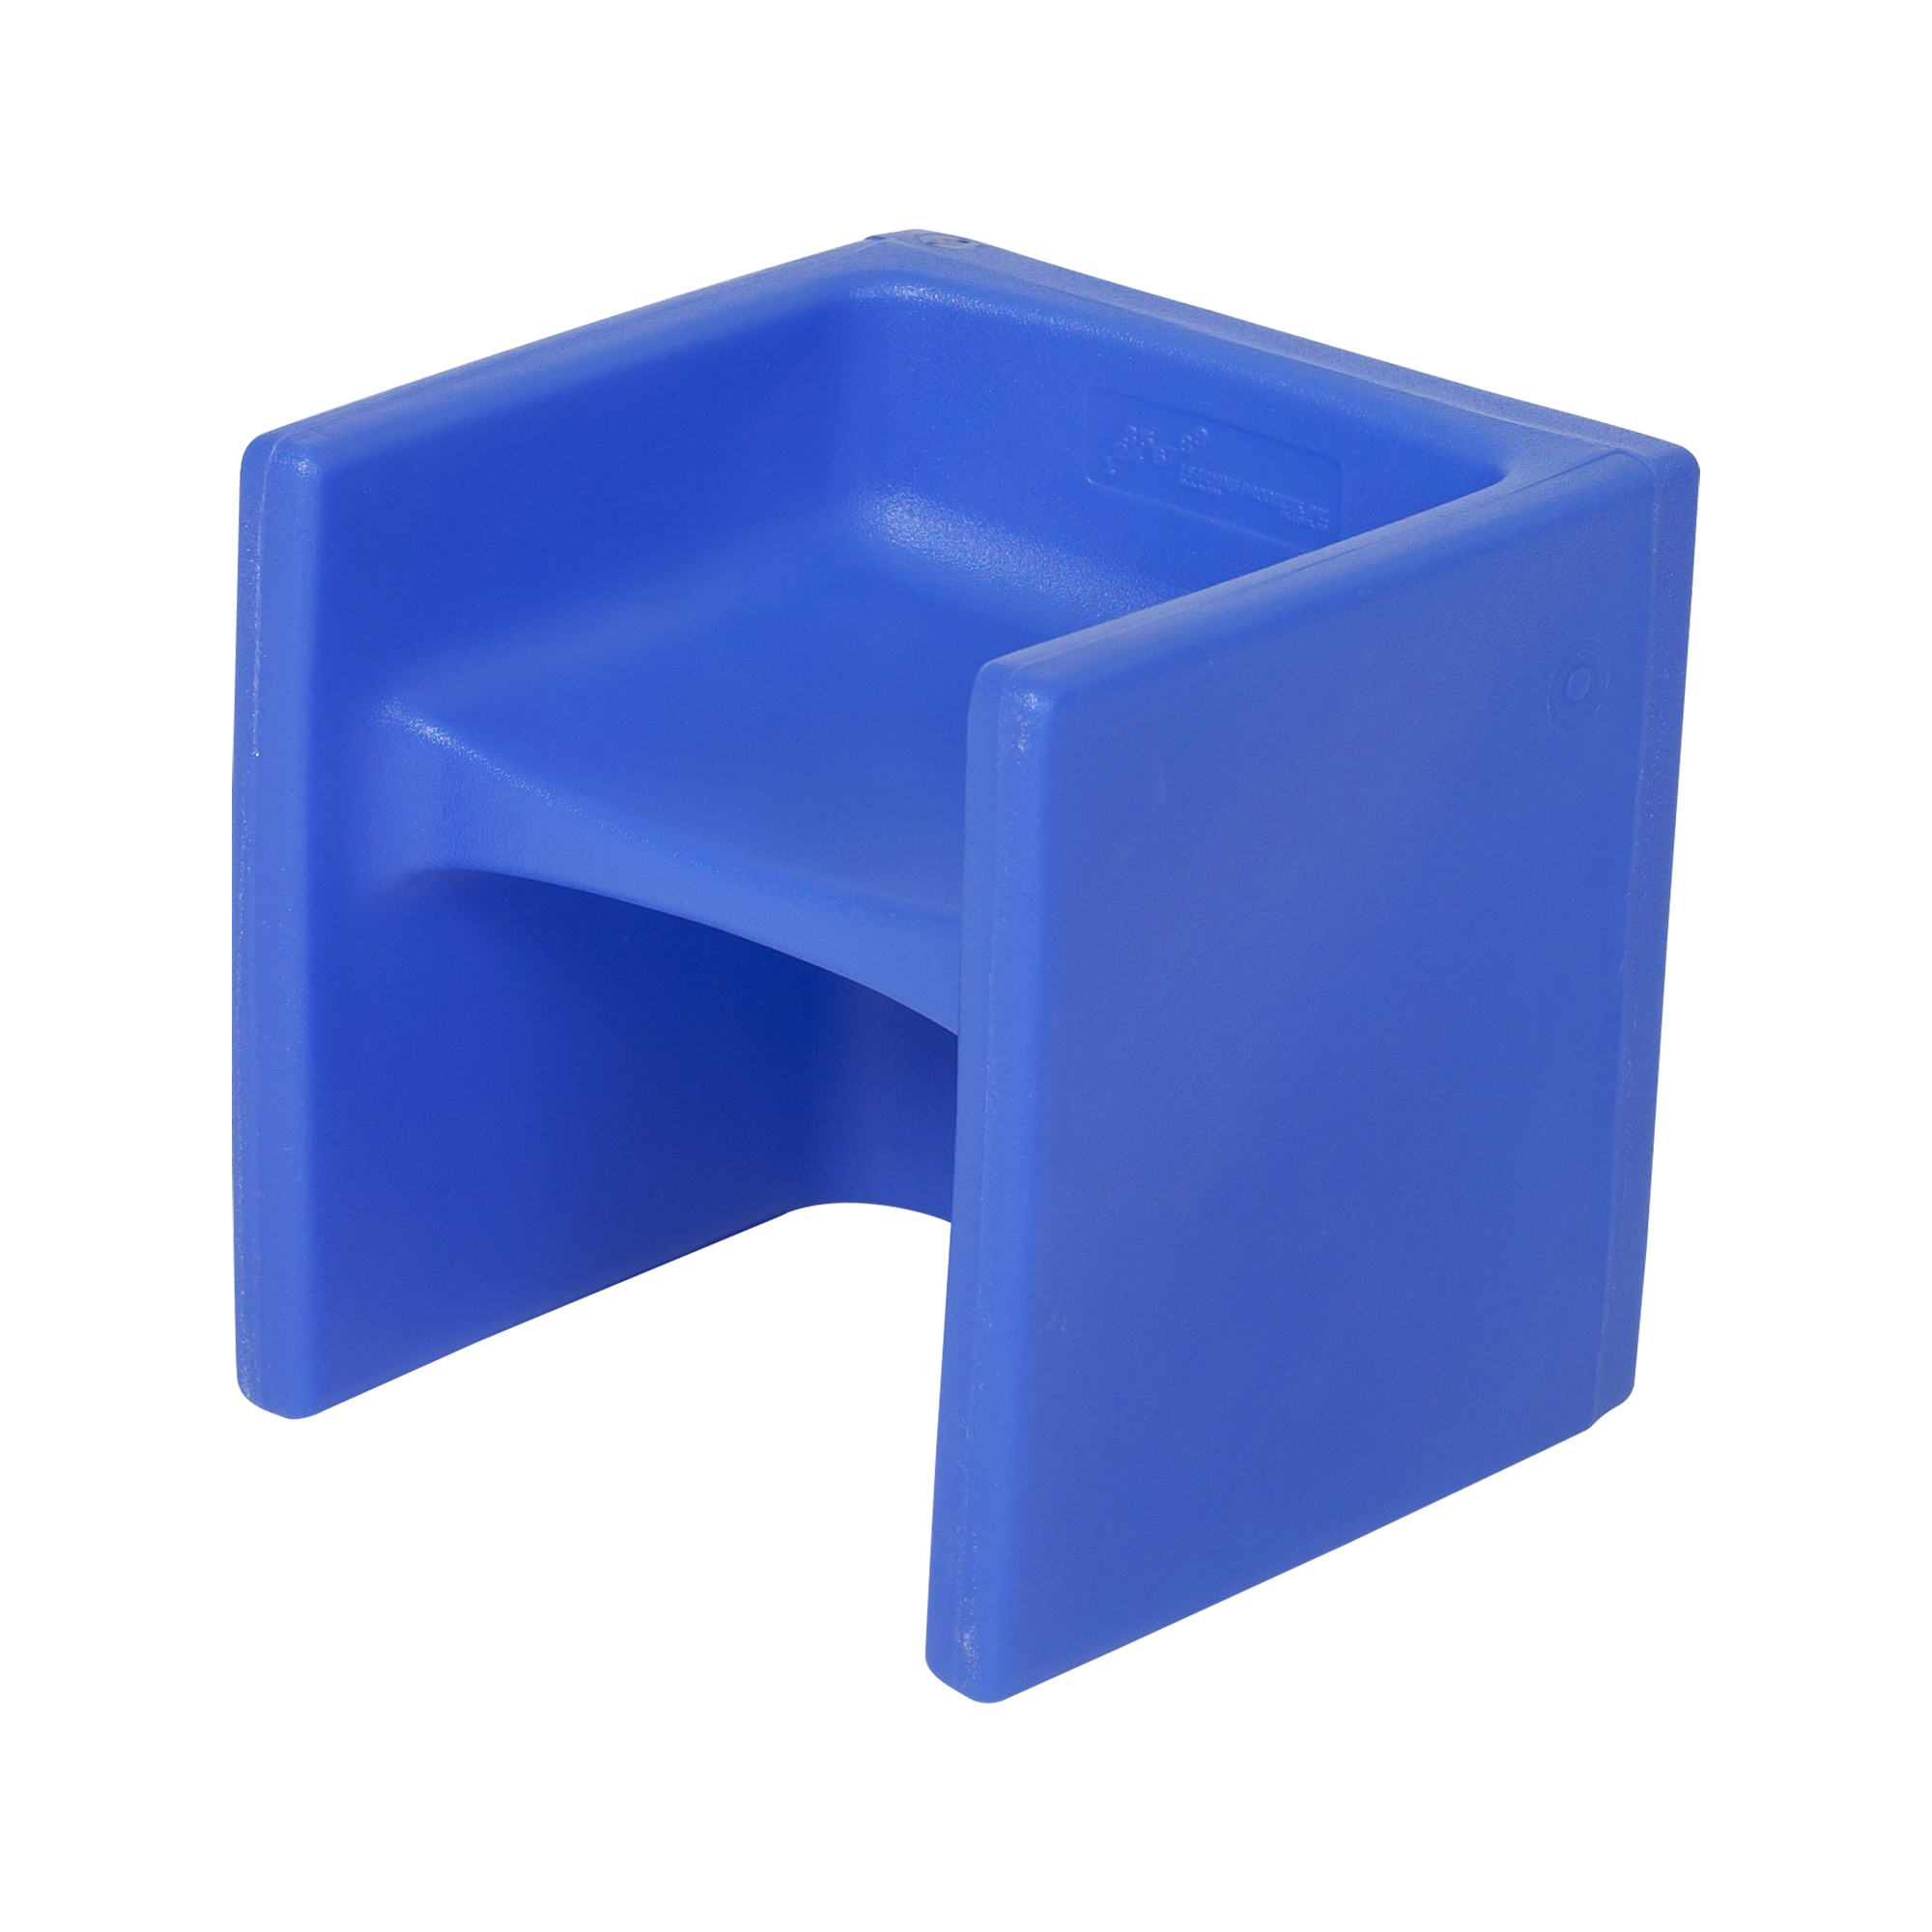 Cube Chair - Blue